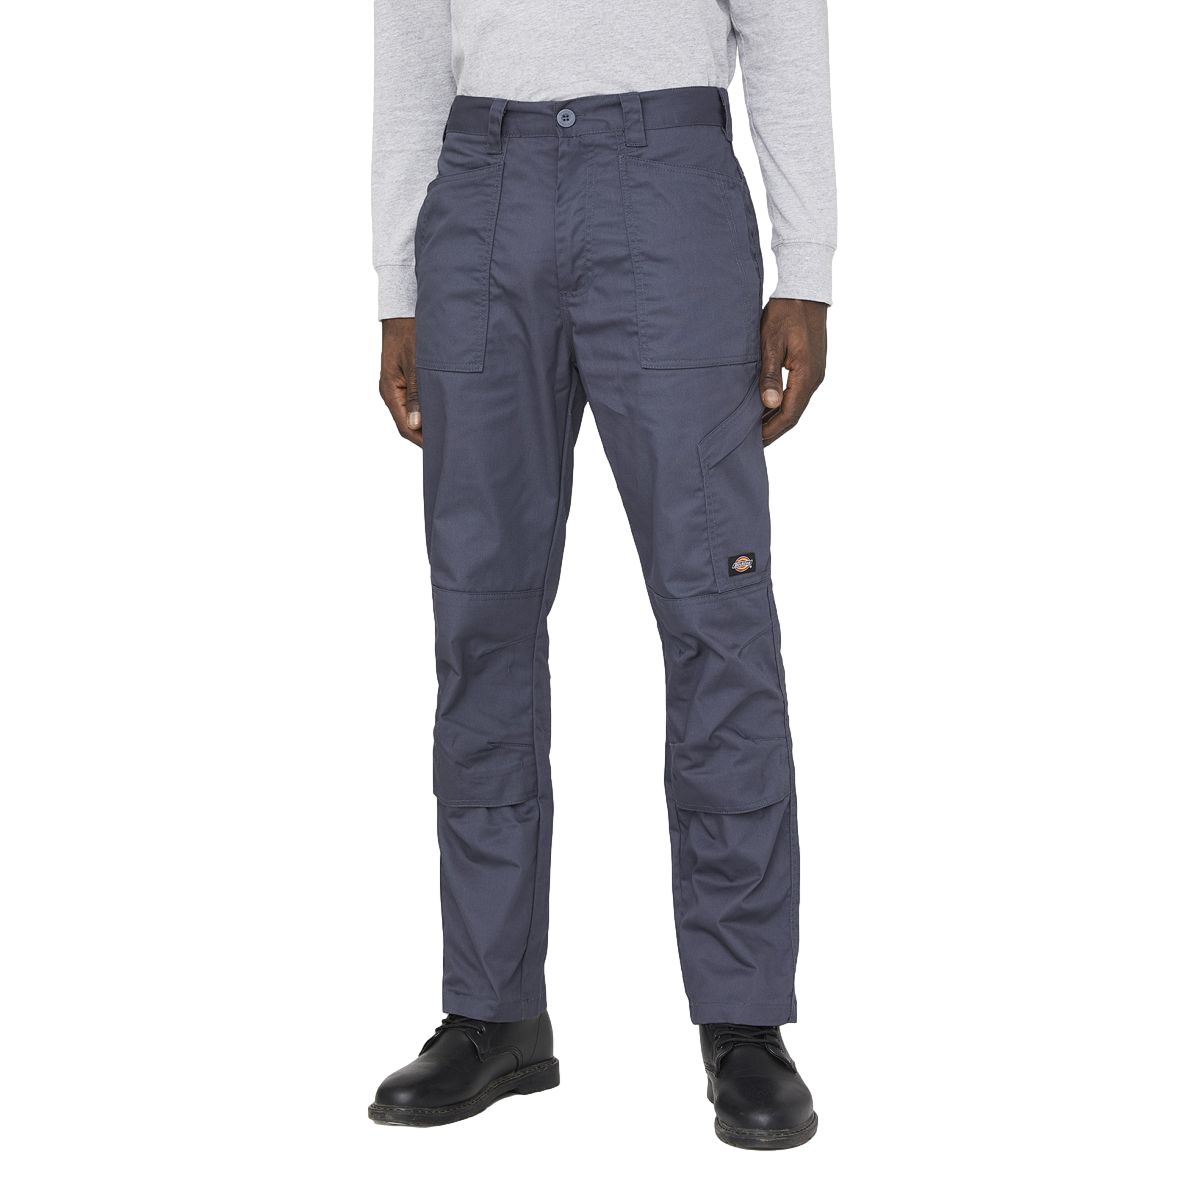 Pantalon de travail Action Flex gris - Dickies - Taille 44 0